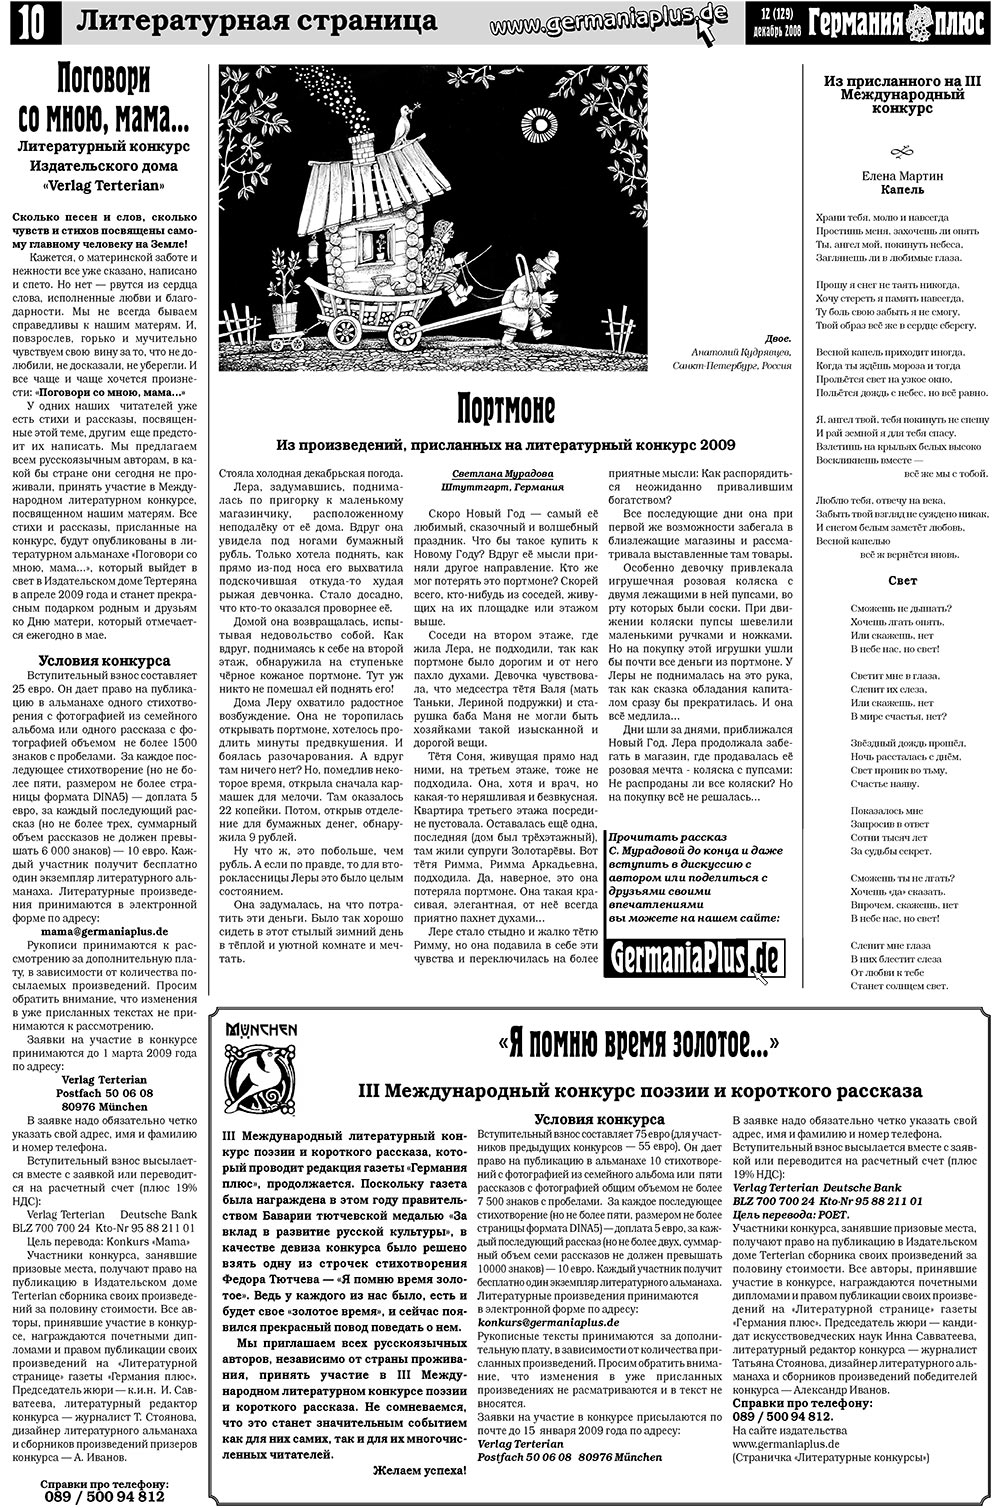 Германия плюс (газета). 2008 год, номер 12, стр. 14